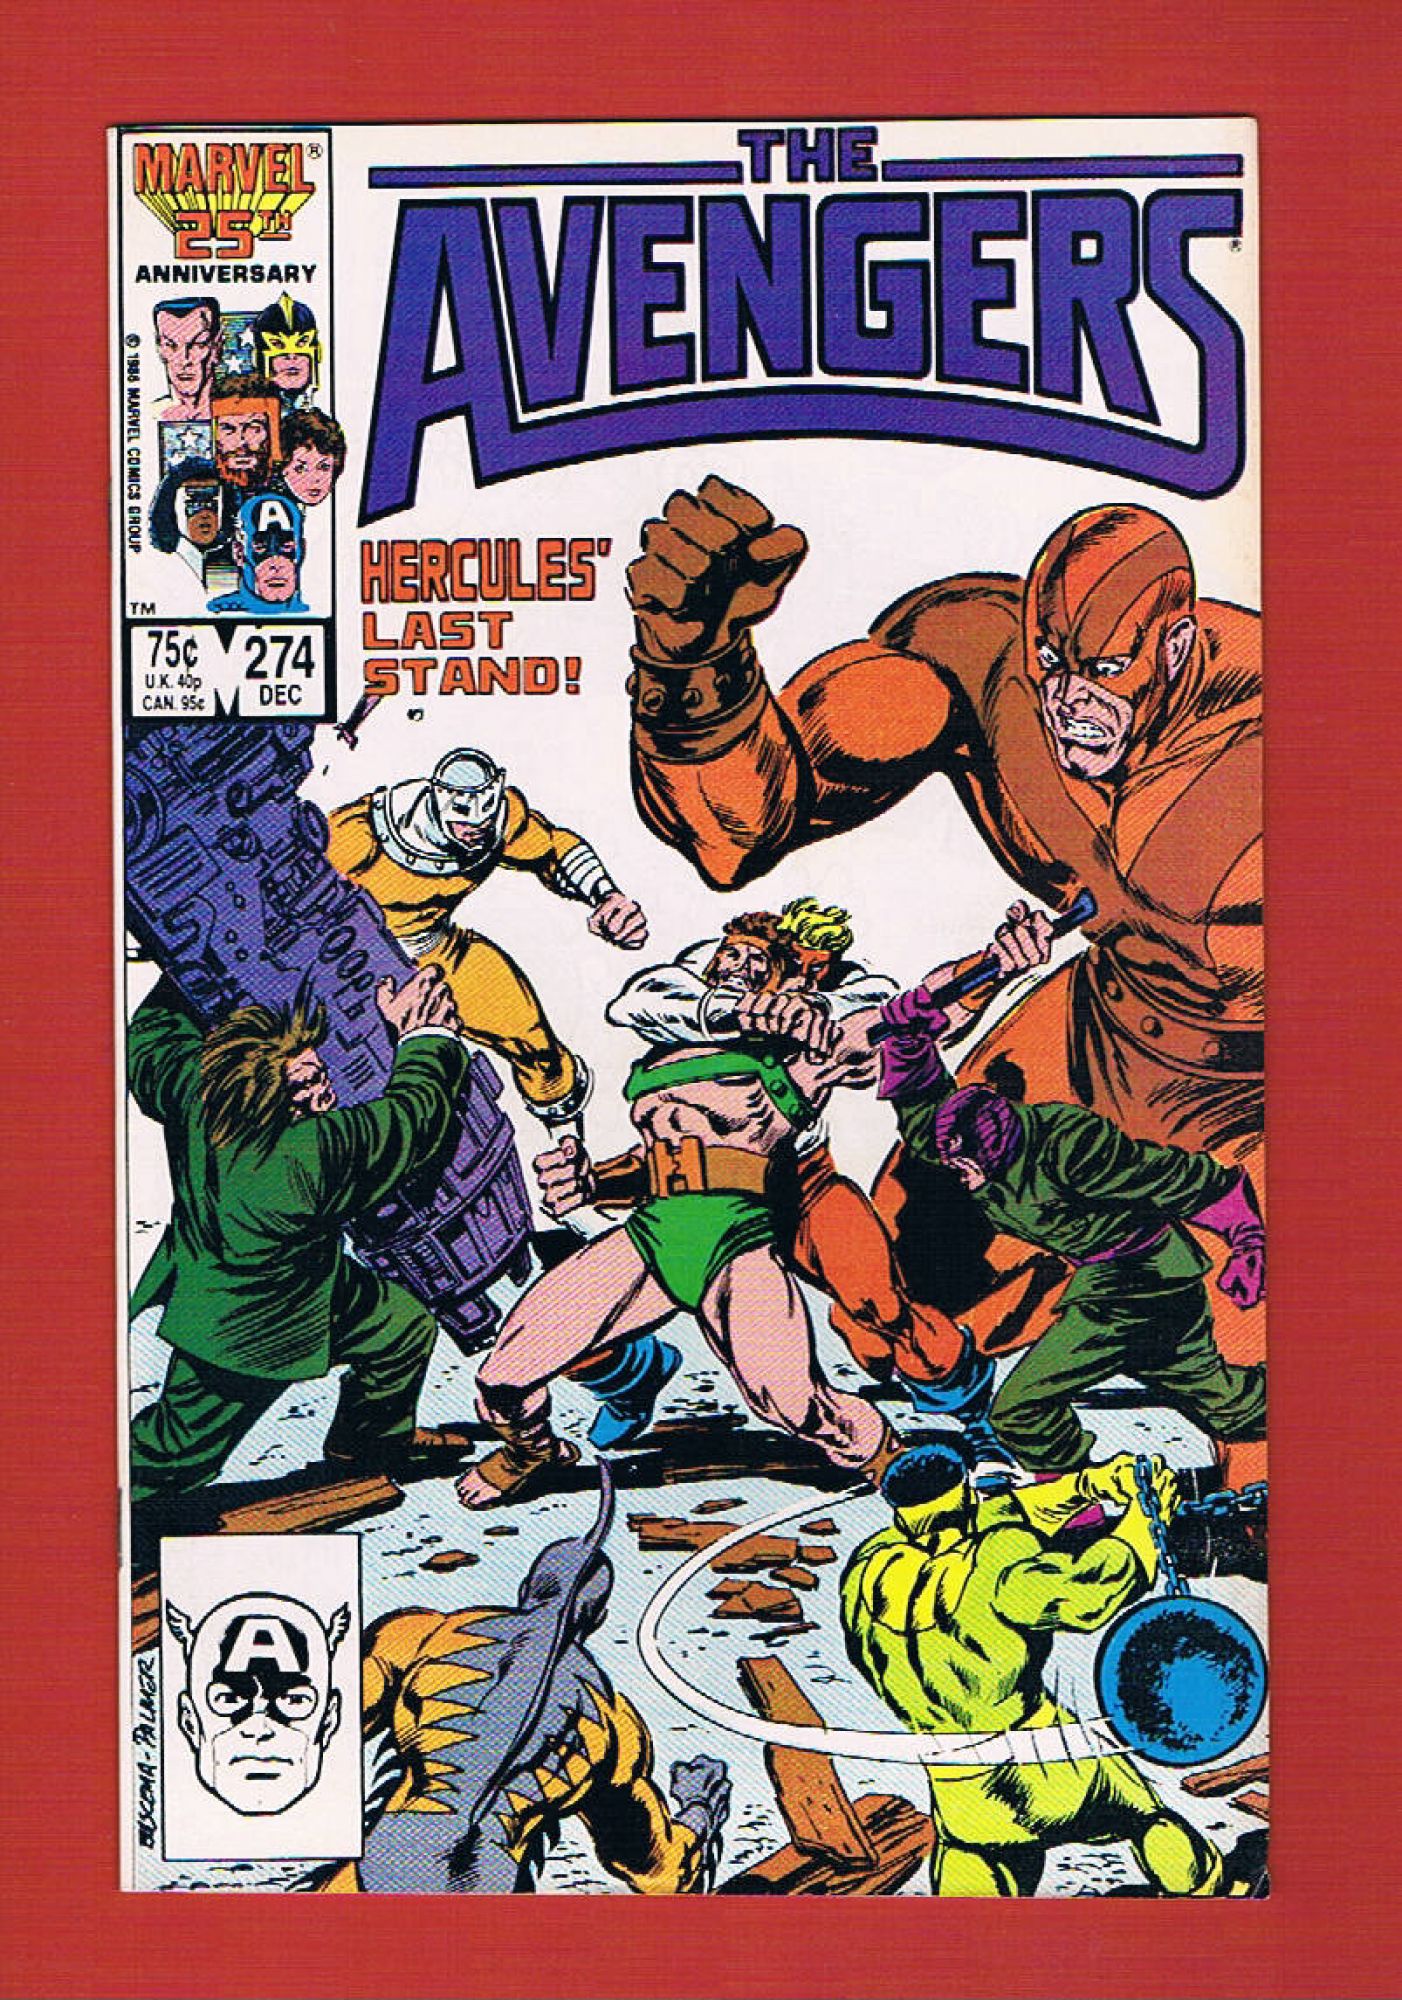 Avengers #274, Dec 1986, 8.5 VF+